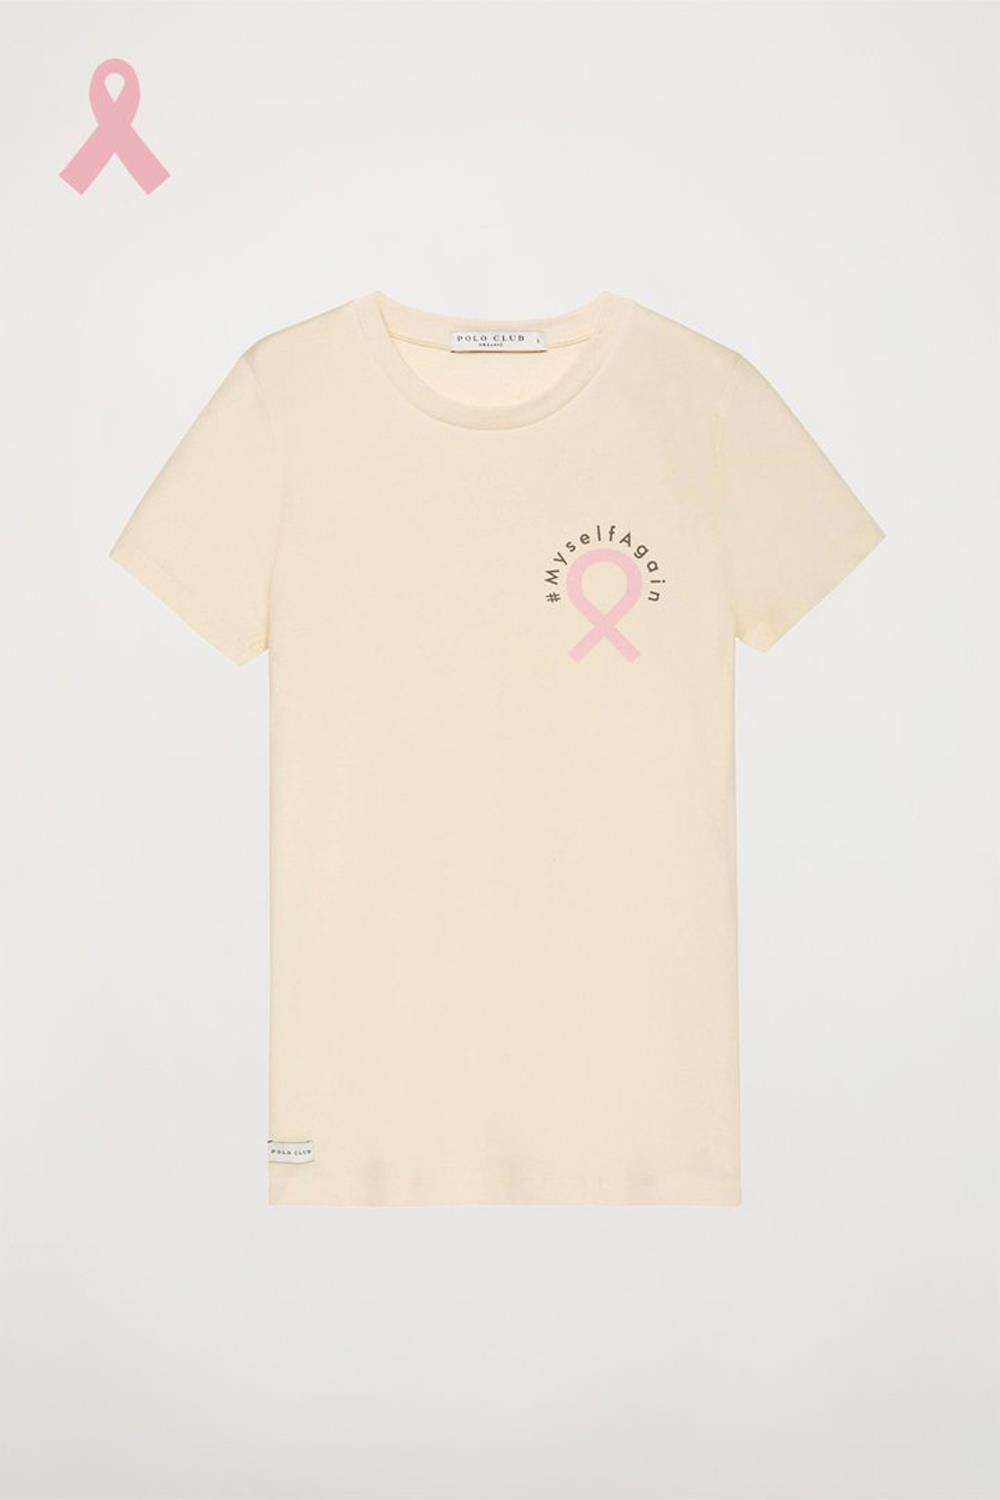 Camiseta beige con estampación MyselfAgain, de Polo Club